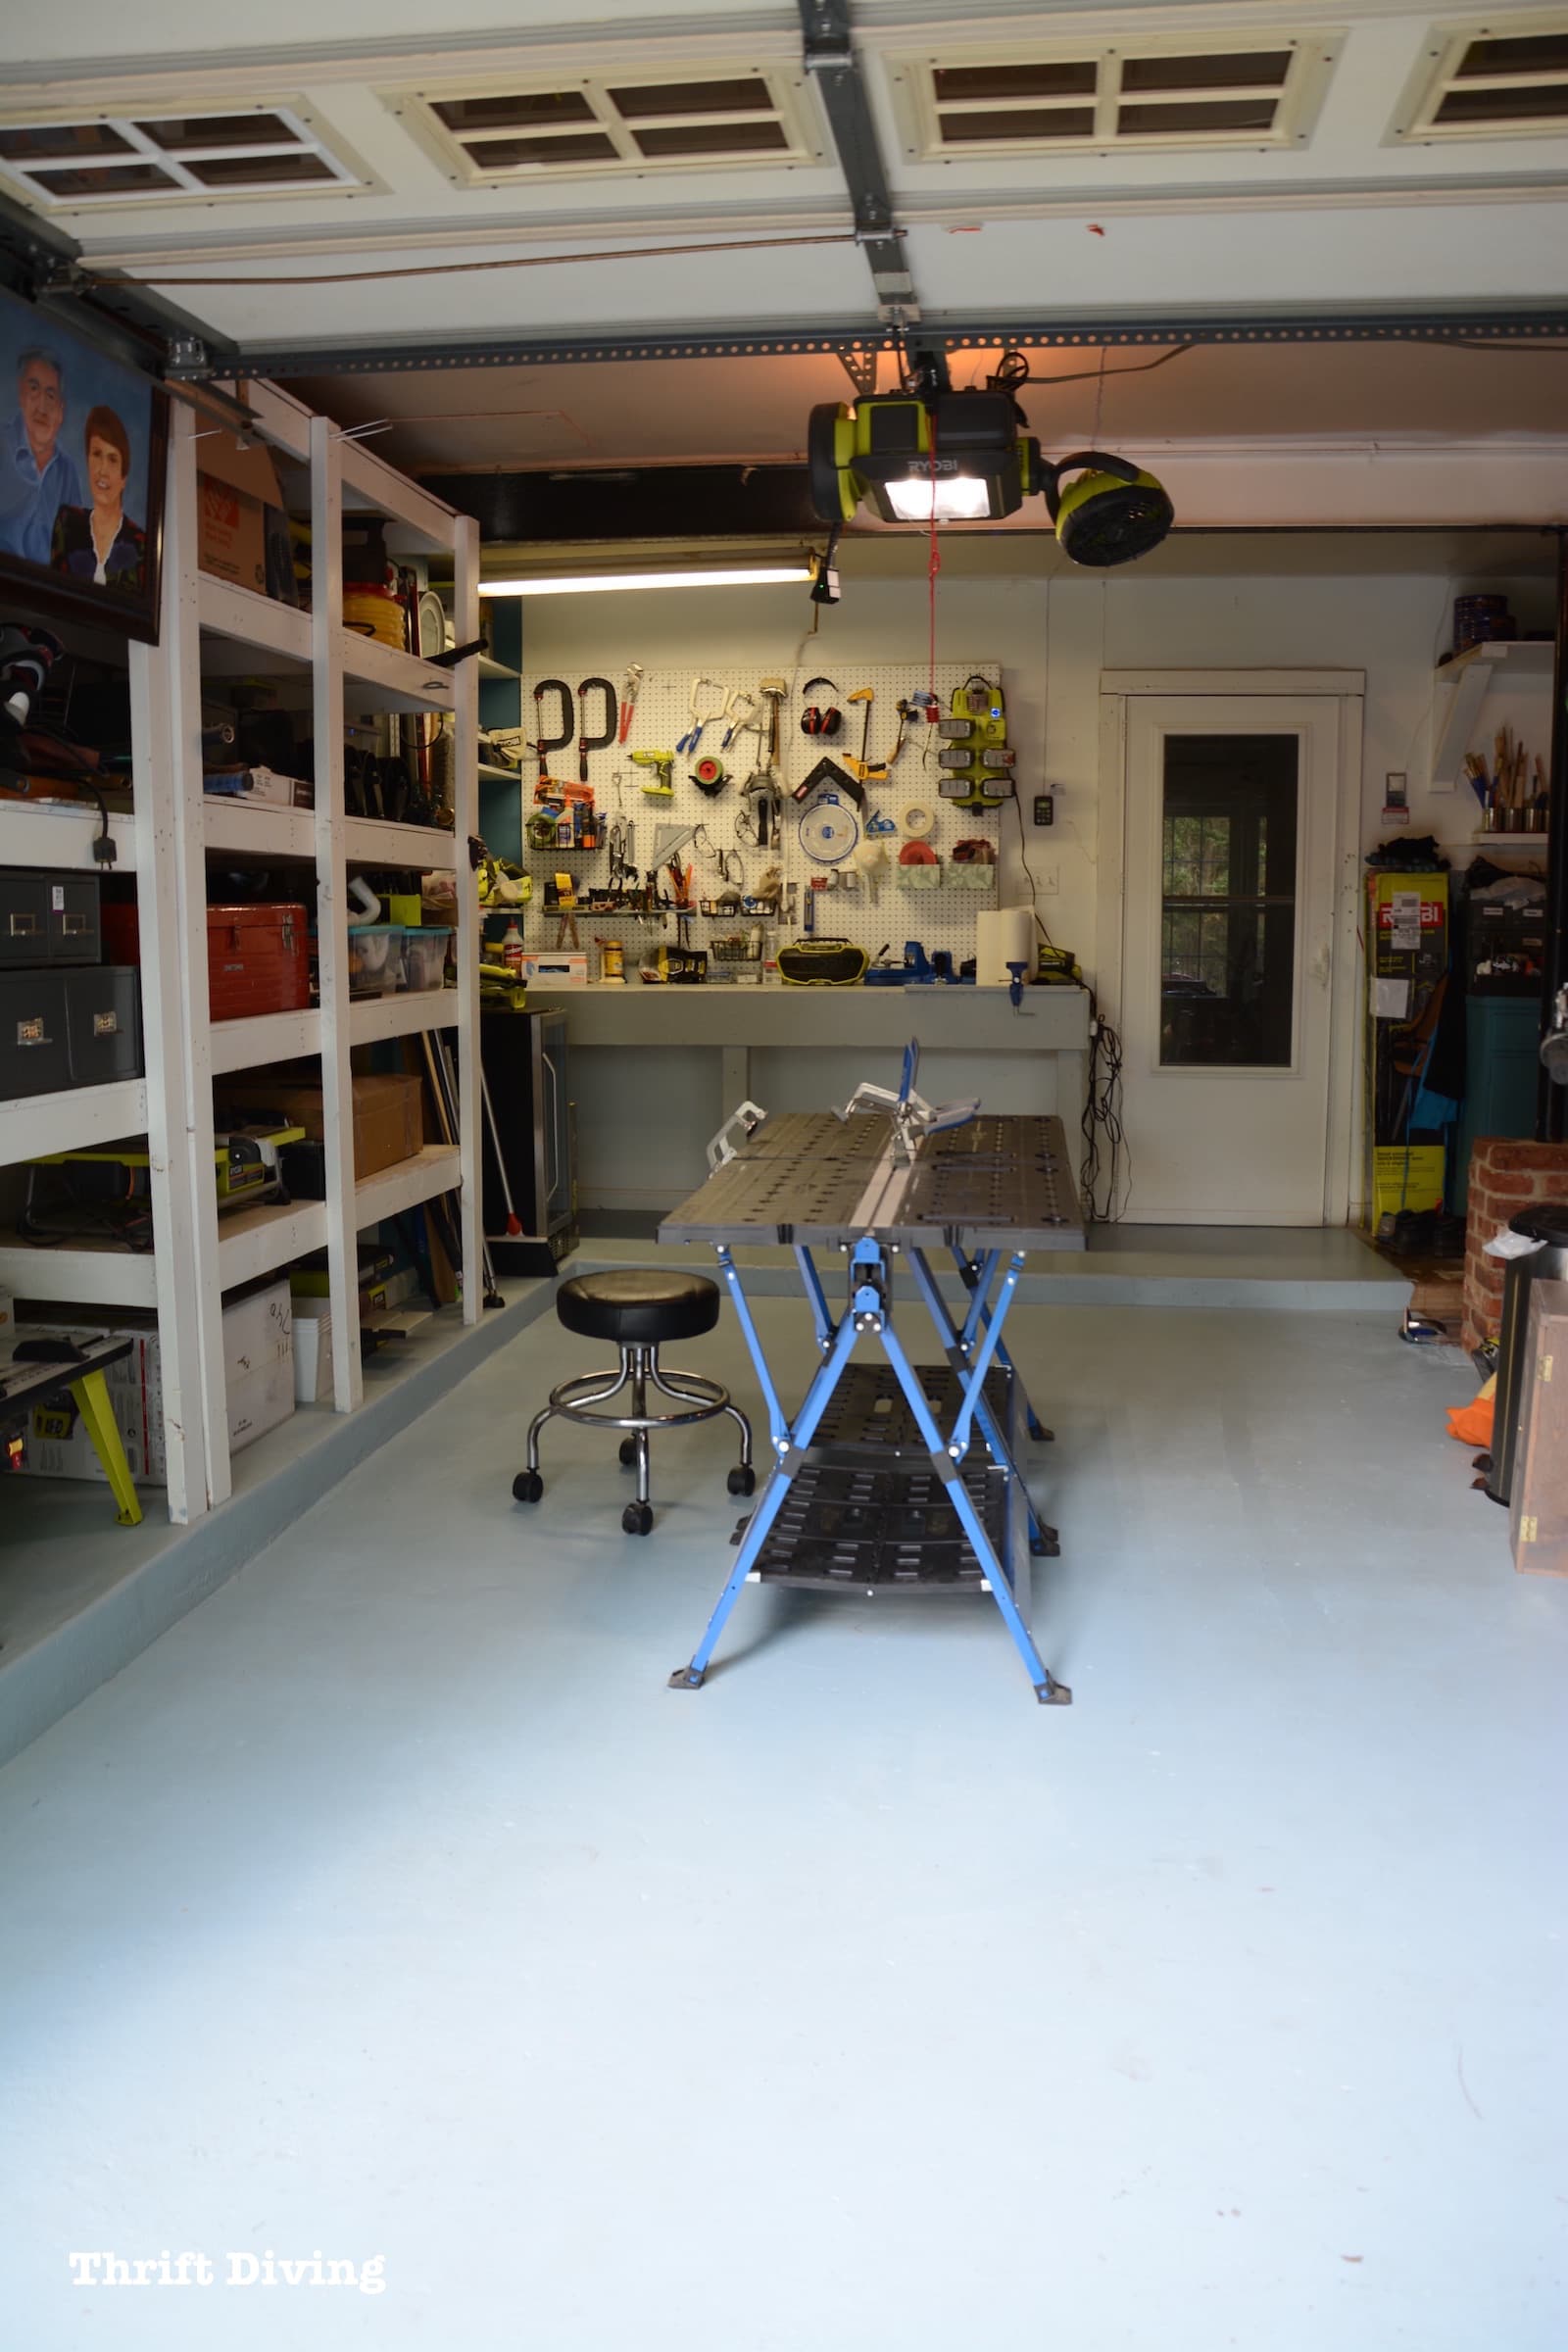 Paint a Garage Floor - Thrift Diving